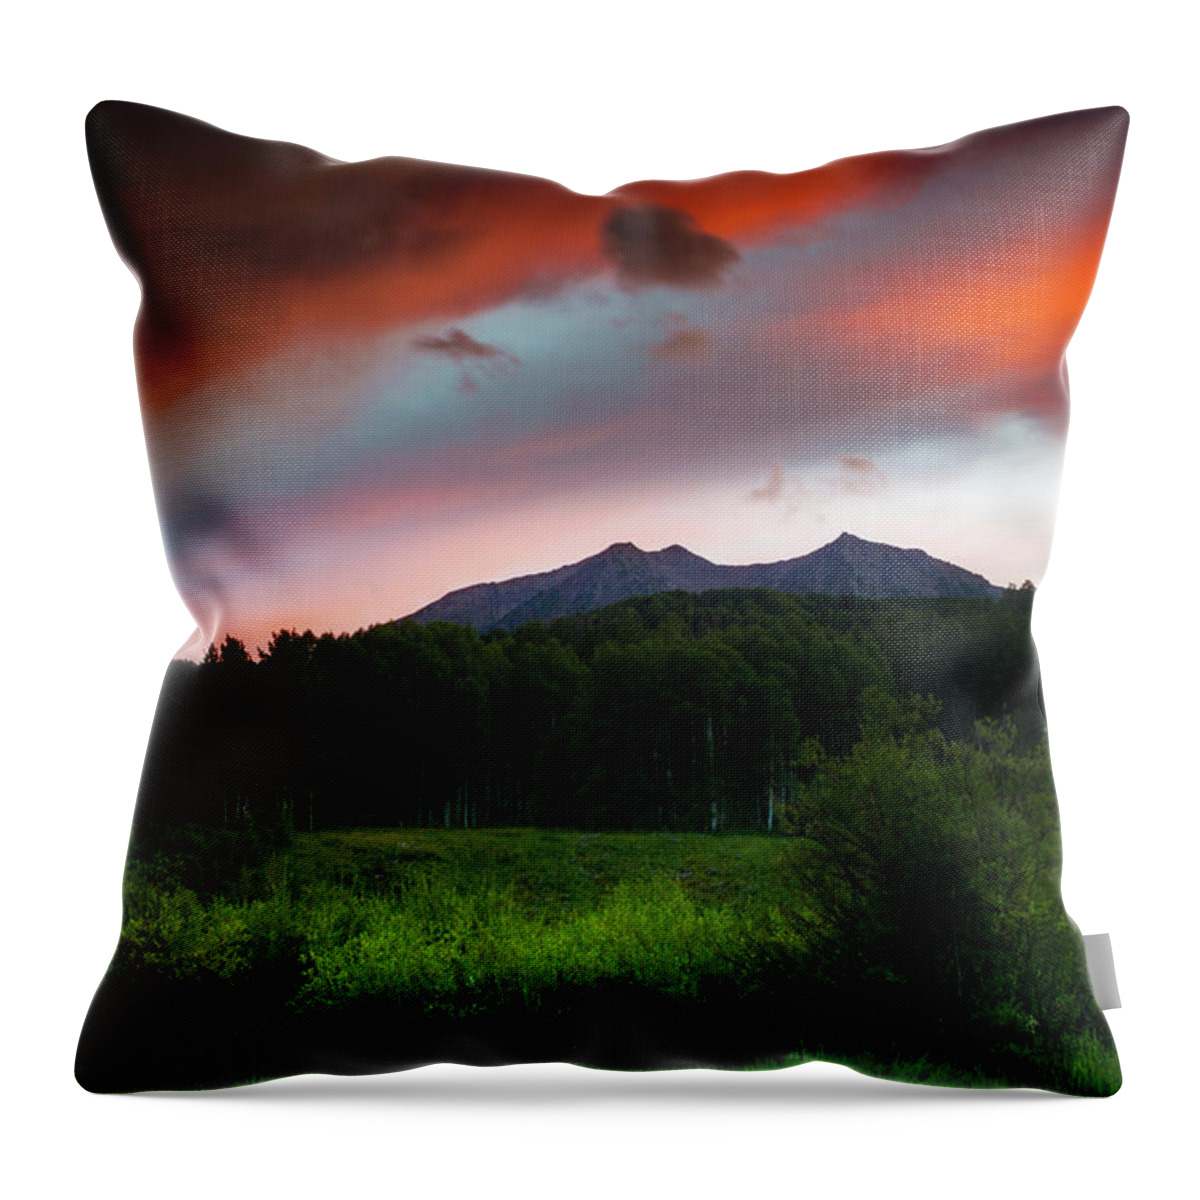 Colorado Throw Pillow featuring the photograph A Colorado Mountain Sunset by John De Bord